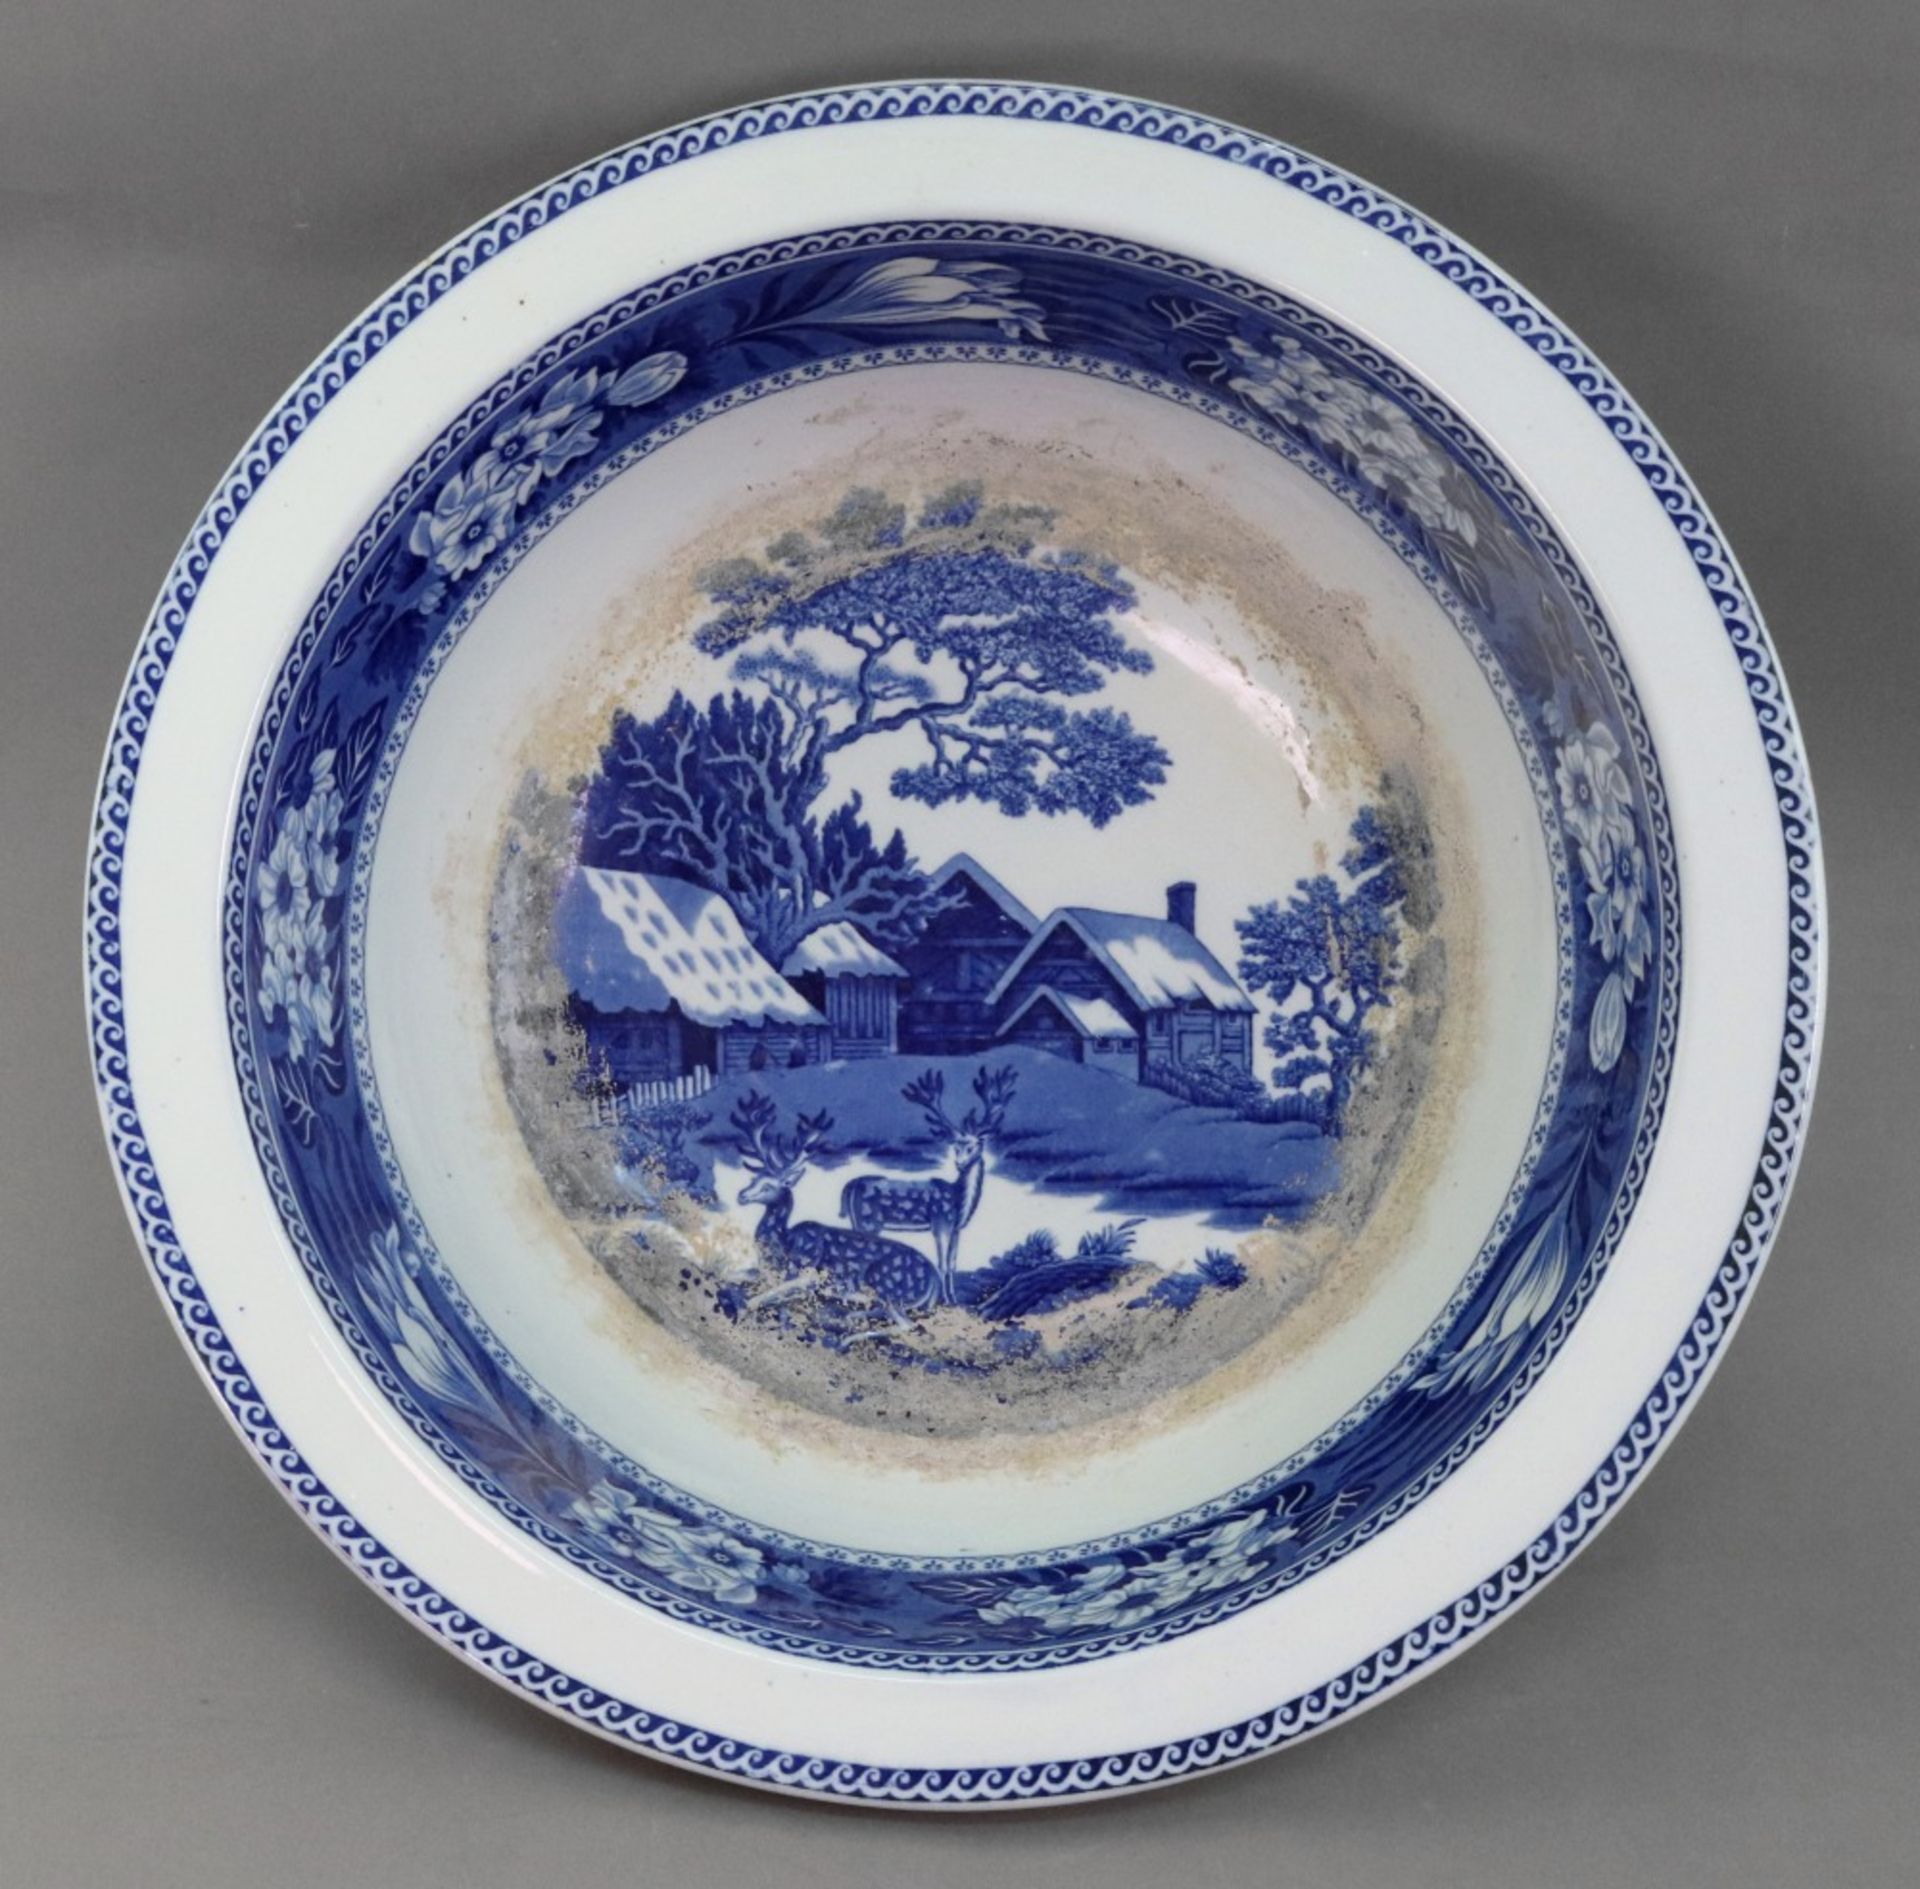 A Wedgwood Fallow Deer blue transfer printed circular bowl, 40cm diameter.